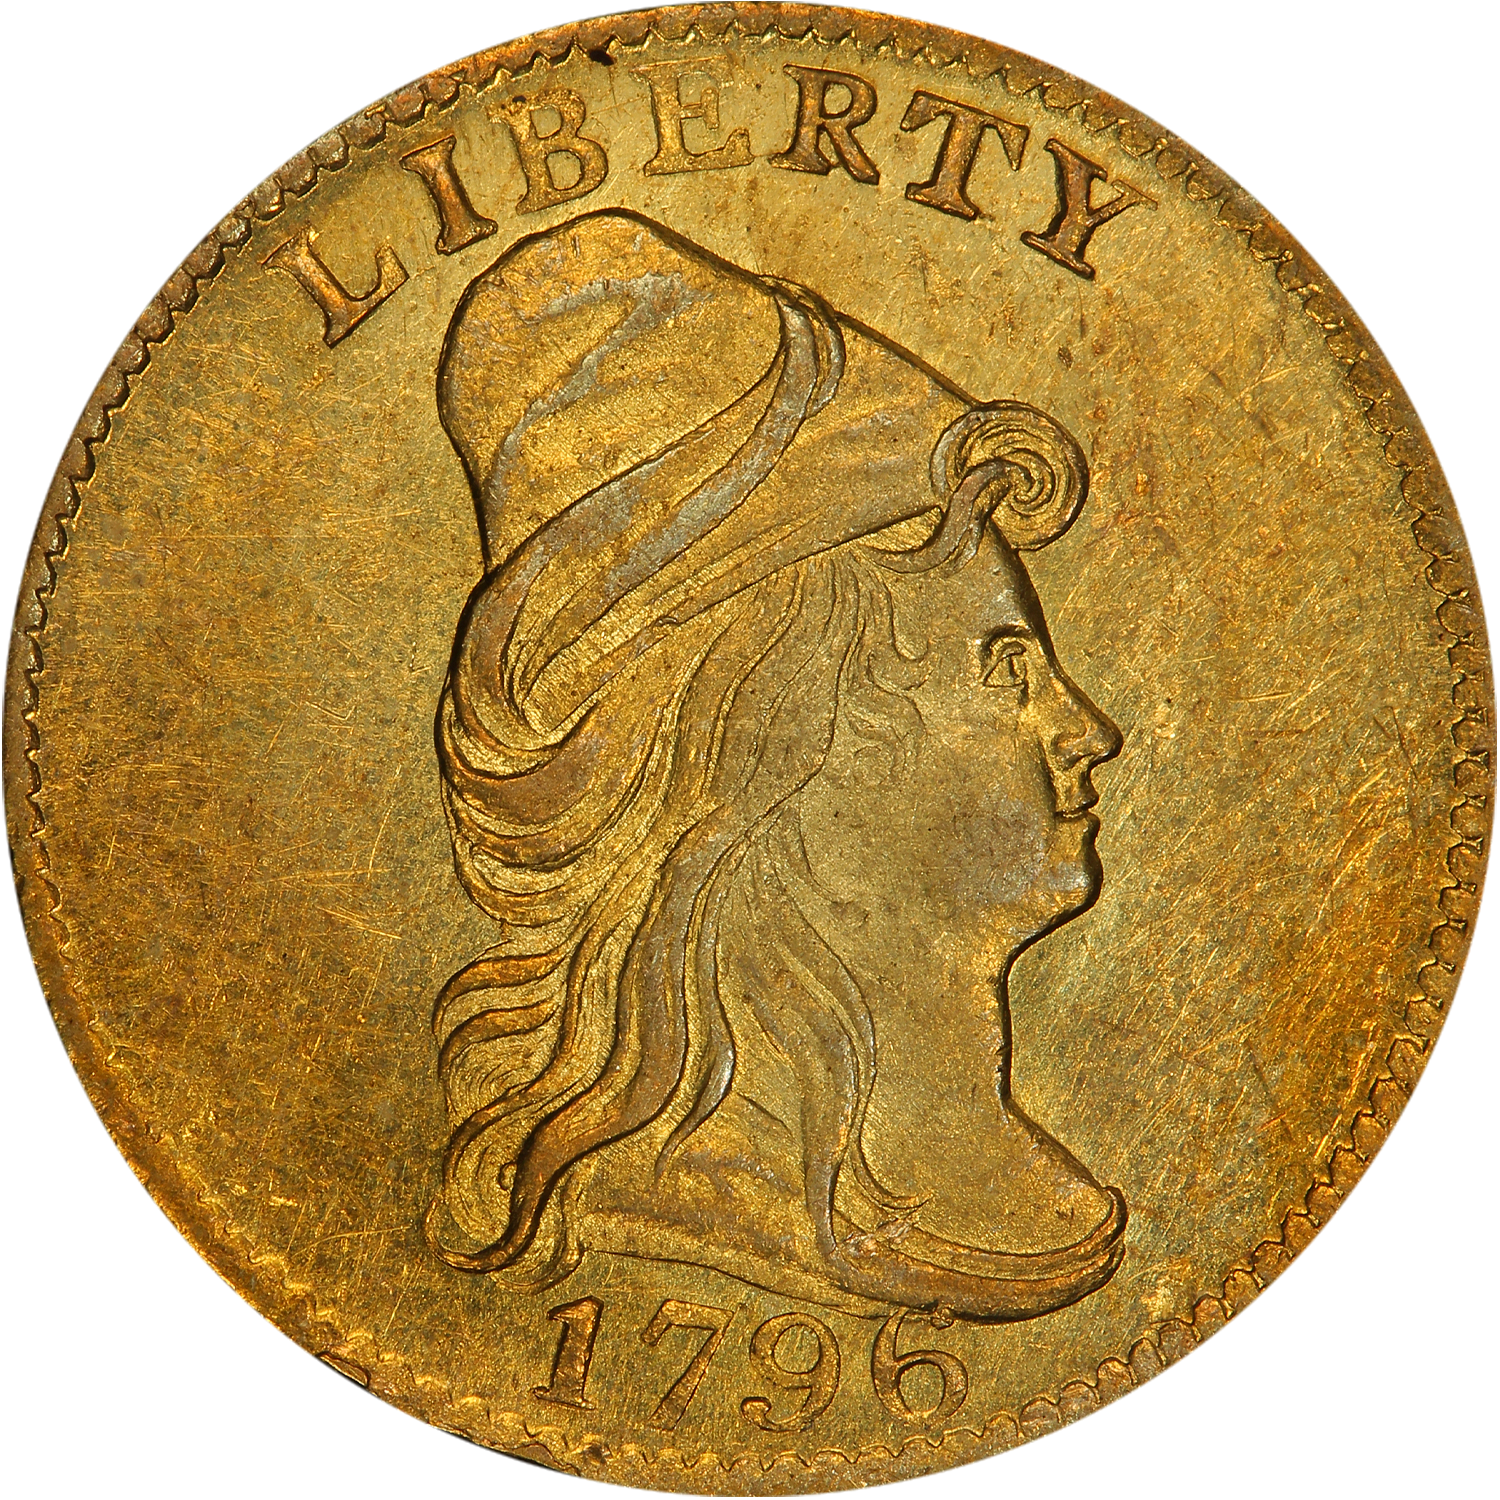 1796 quarter eagle gold value